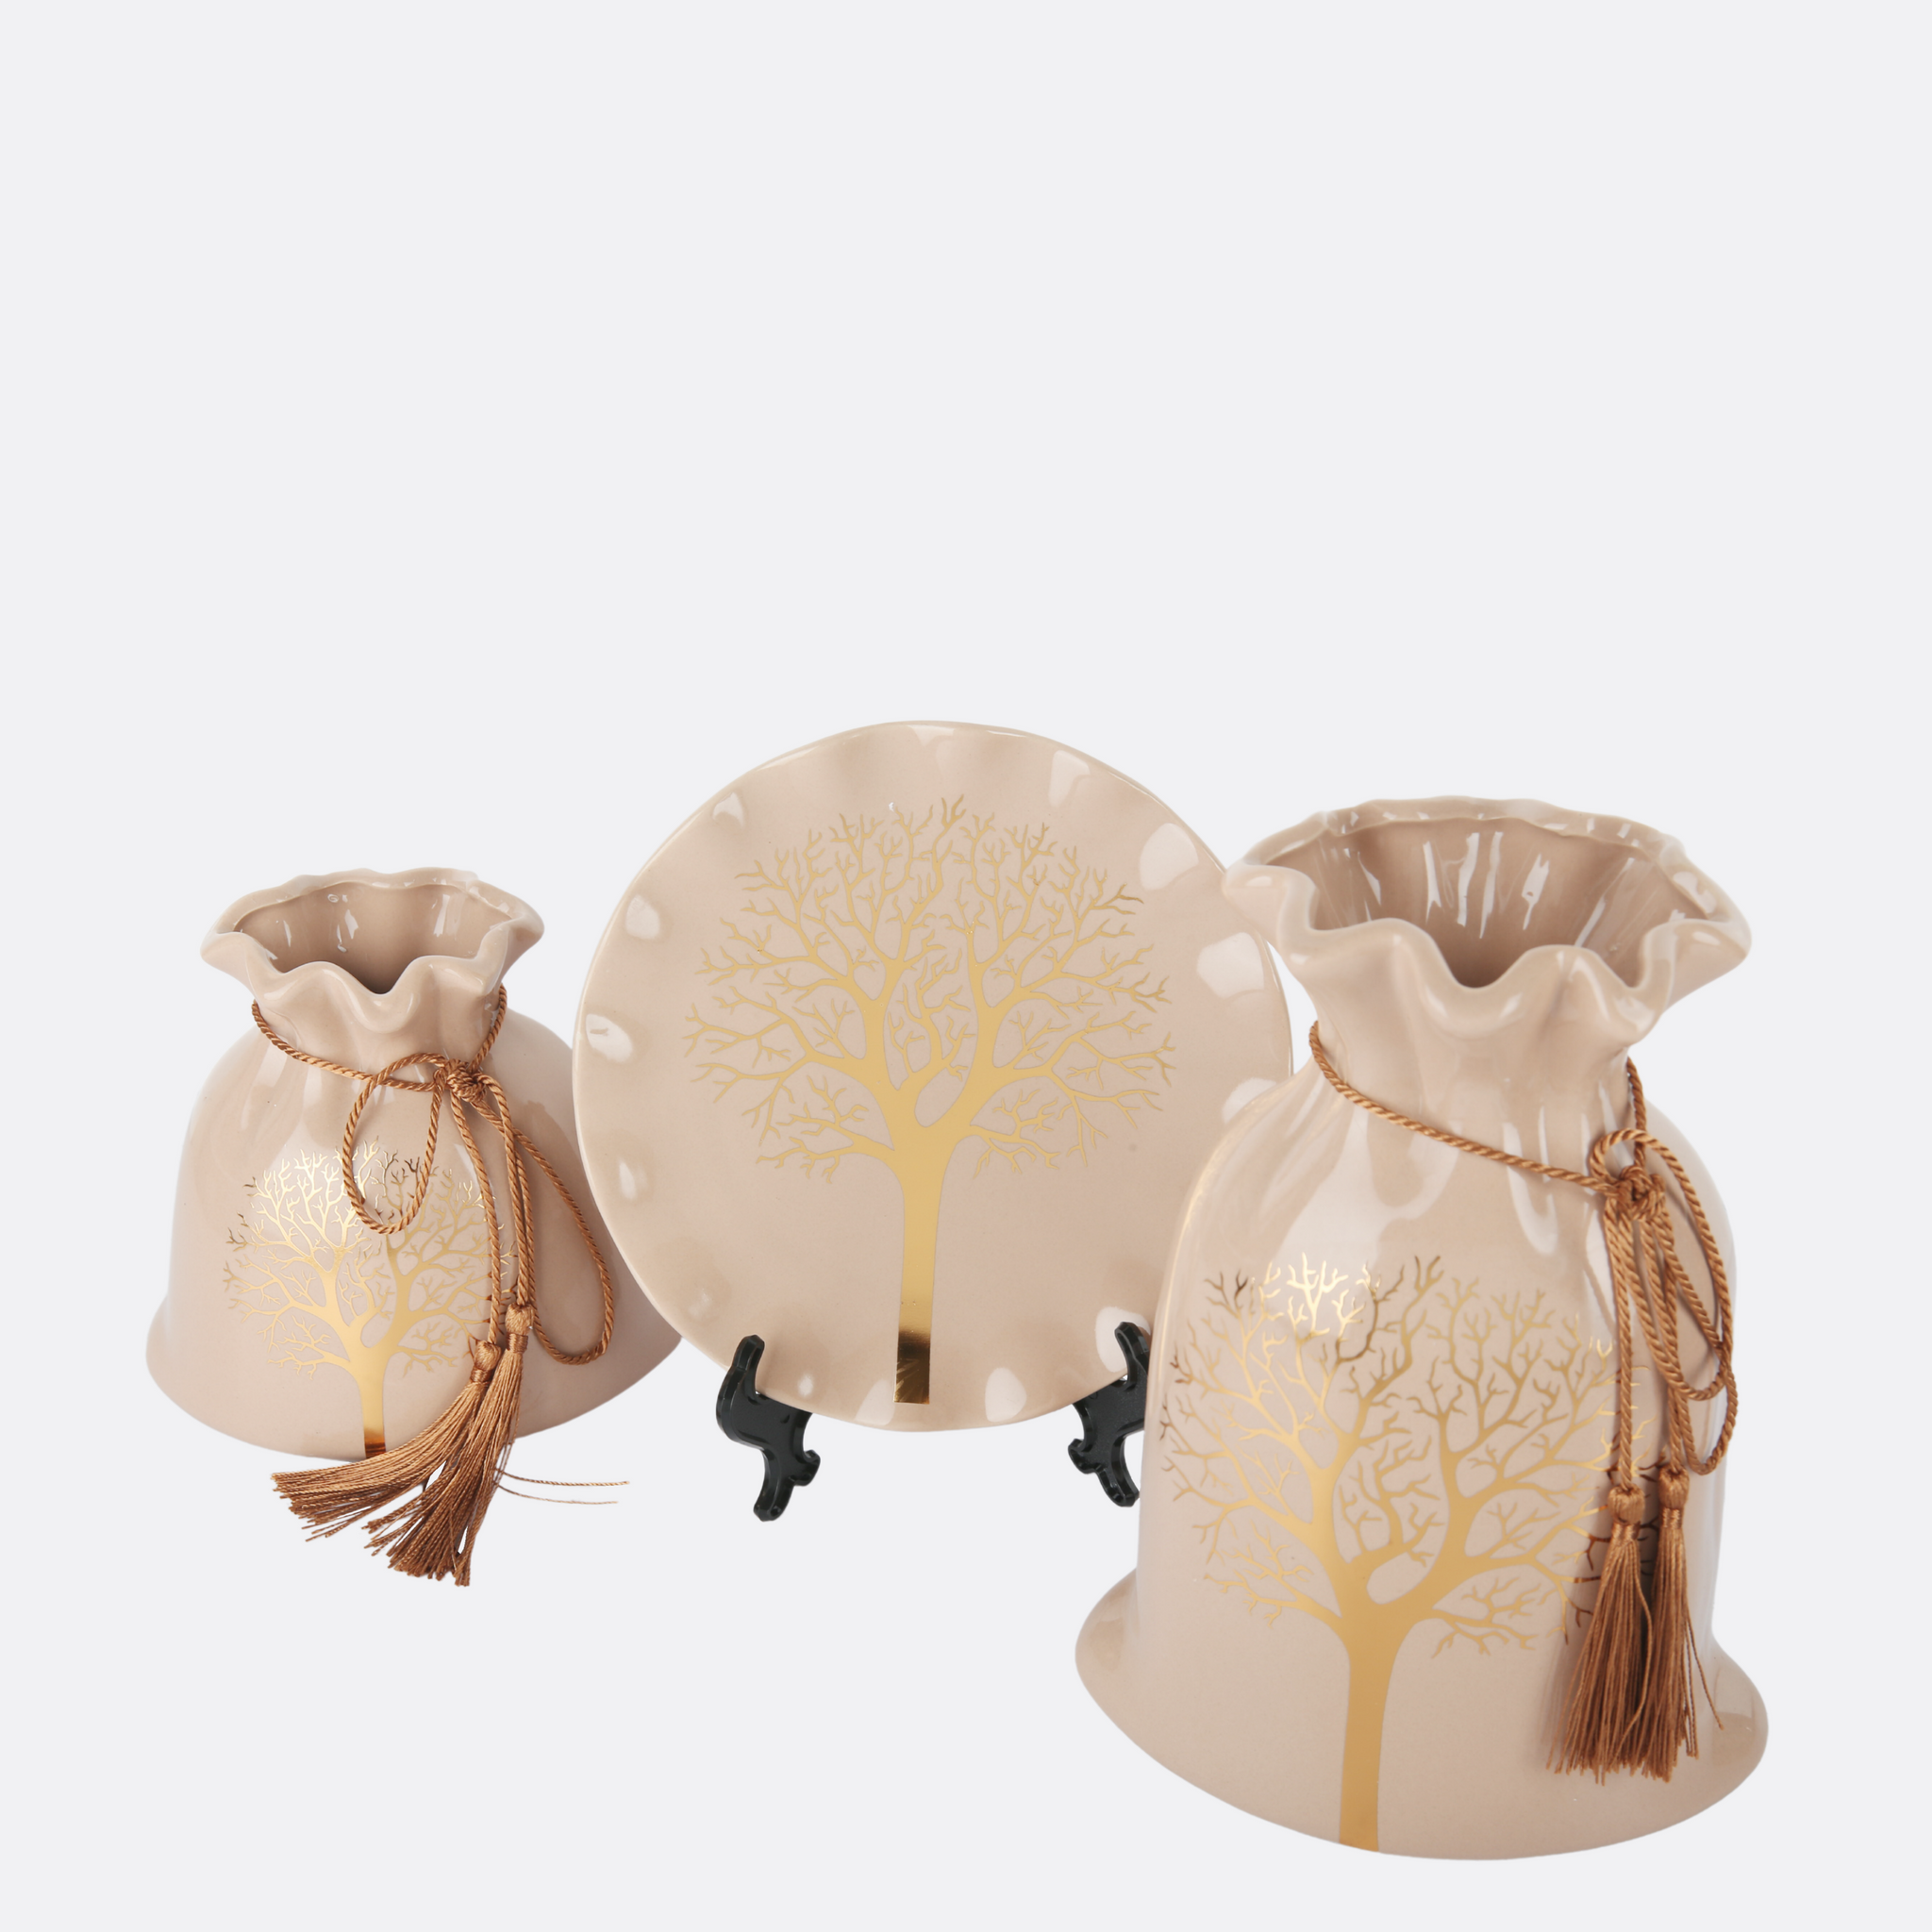 Autumn Vase Set